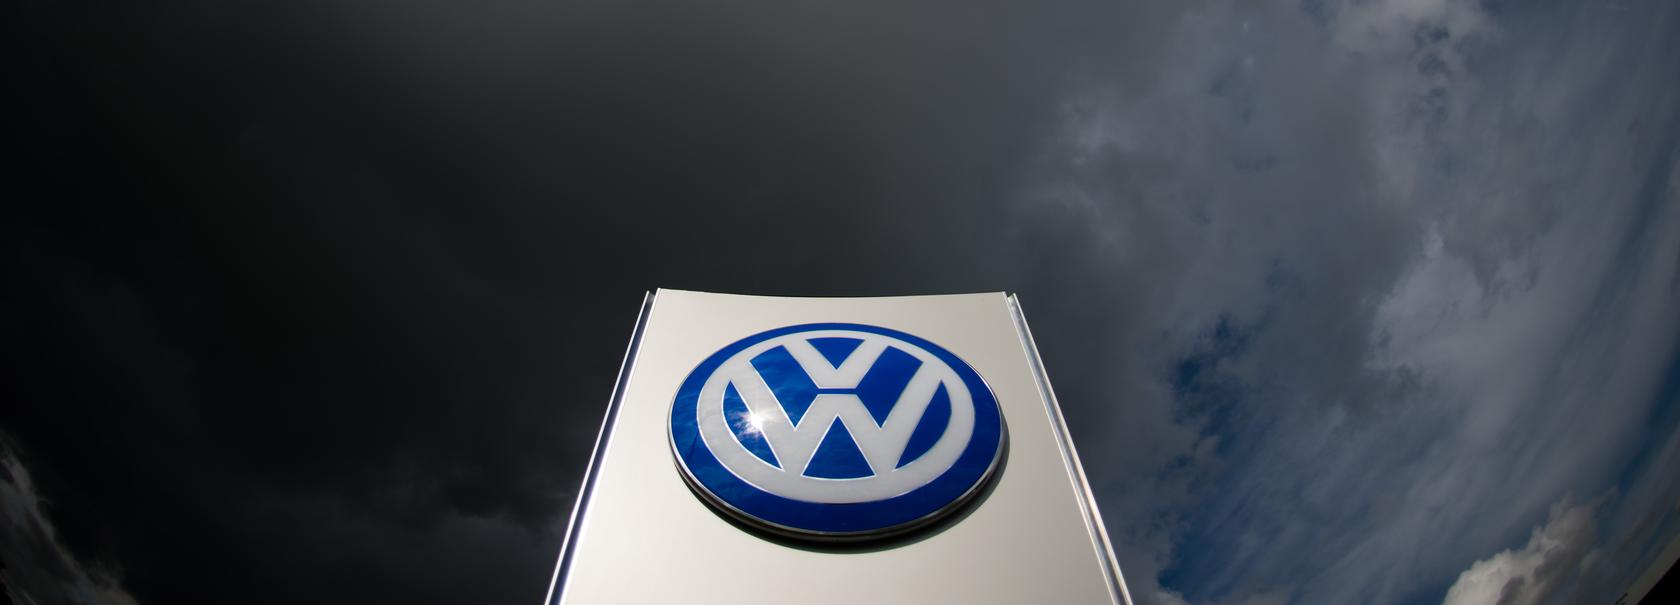 Abgas-Skandal vorbei? Von wegen: Die größten Herausforderungen dürften nun erst auf Volkswagen zukommen.